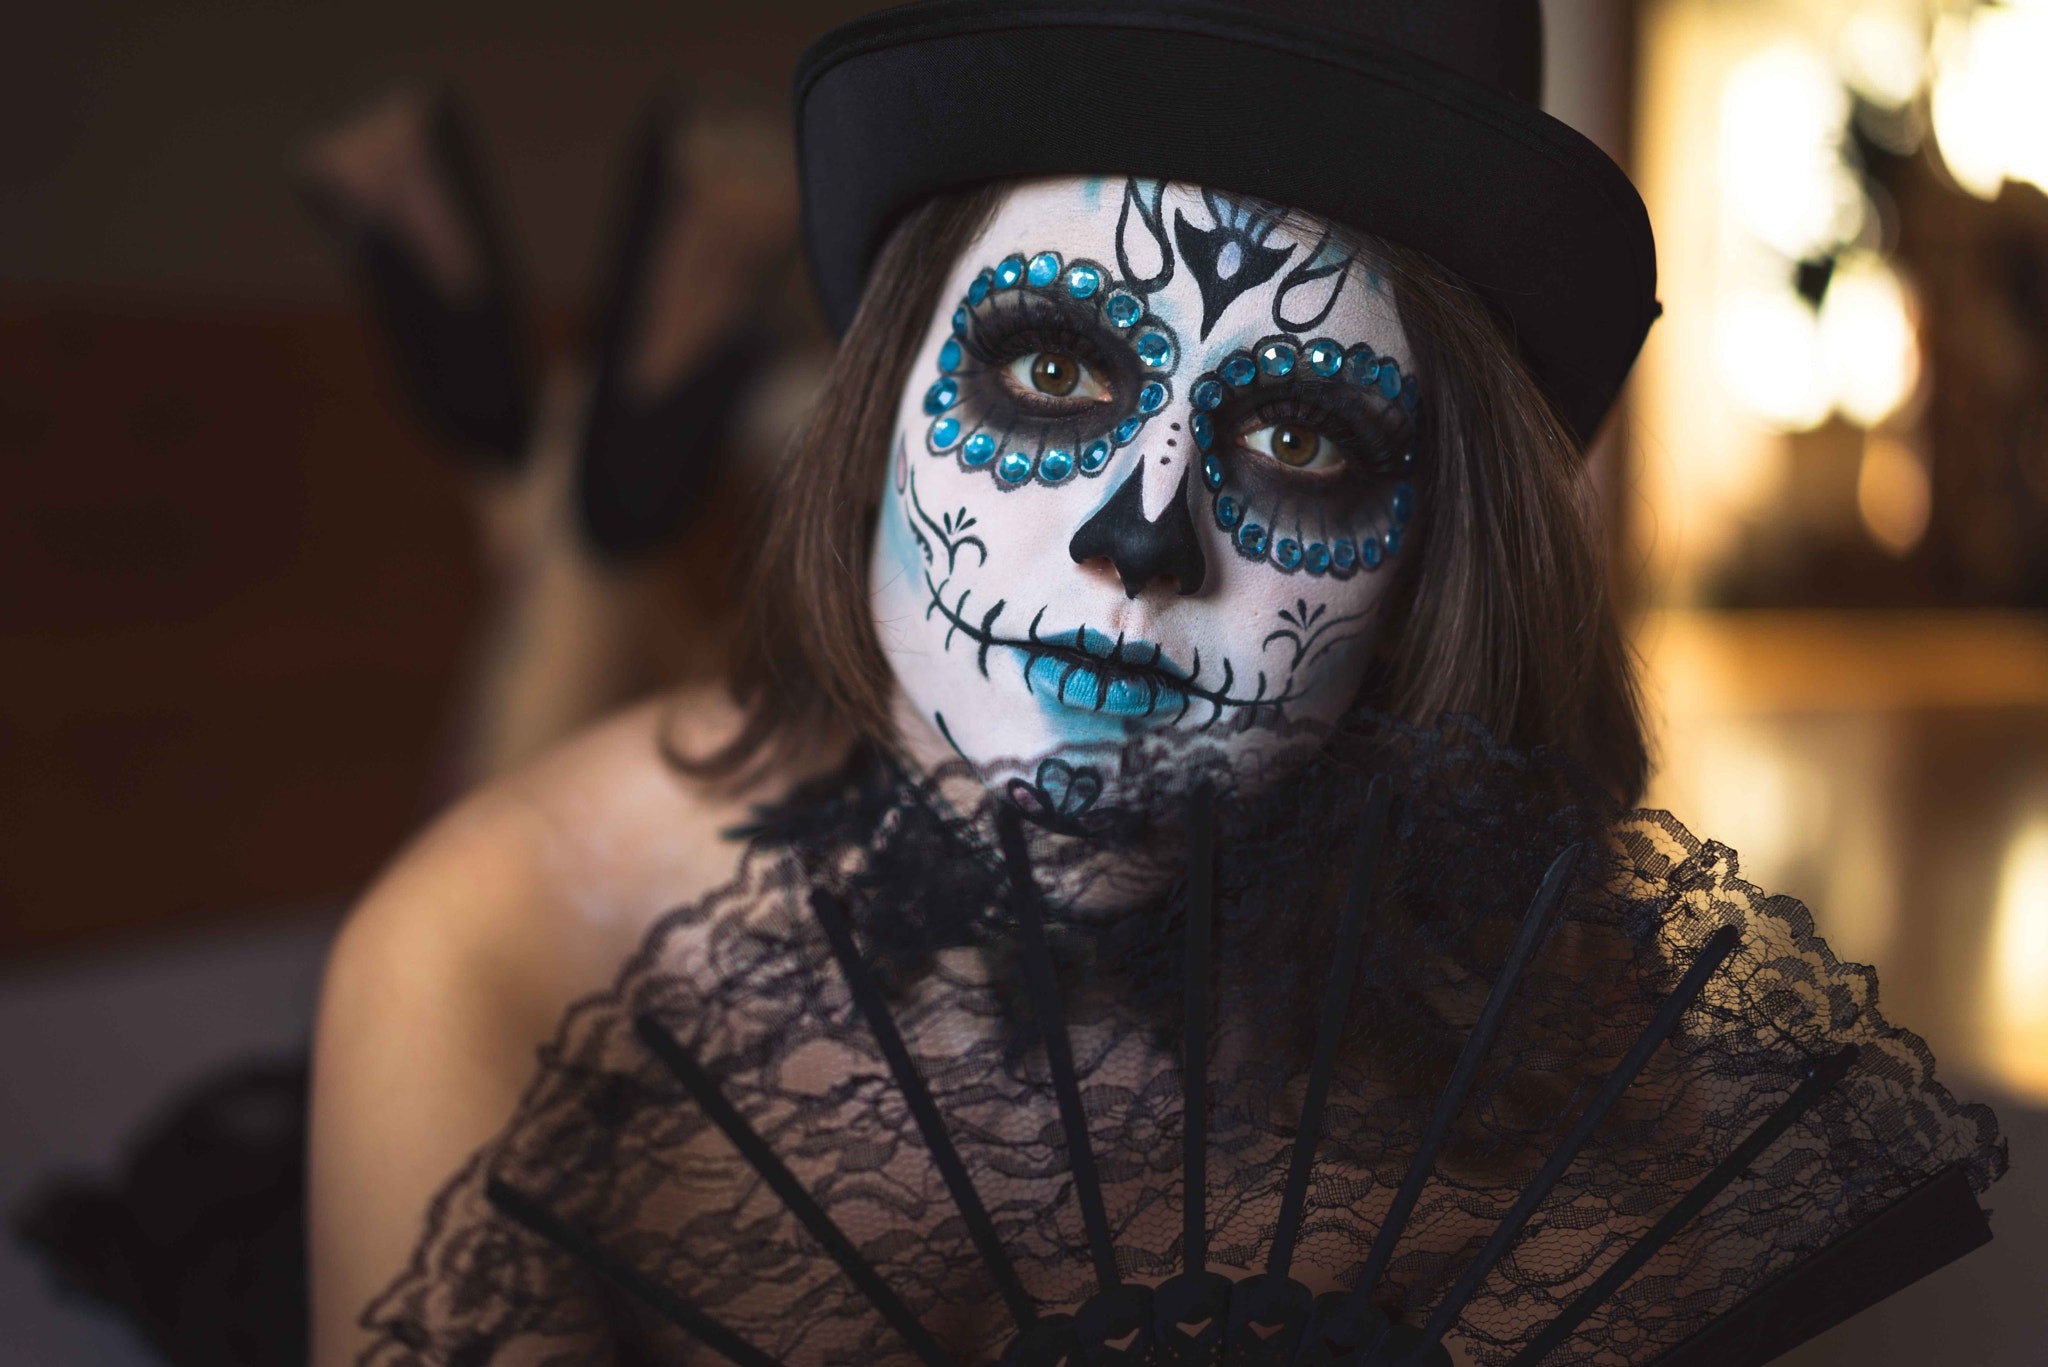 People 2048x1367 face Dia de los Muertos makeup model women Sugar Skull face paint brunette